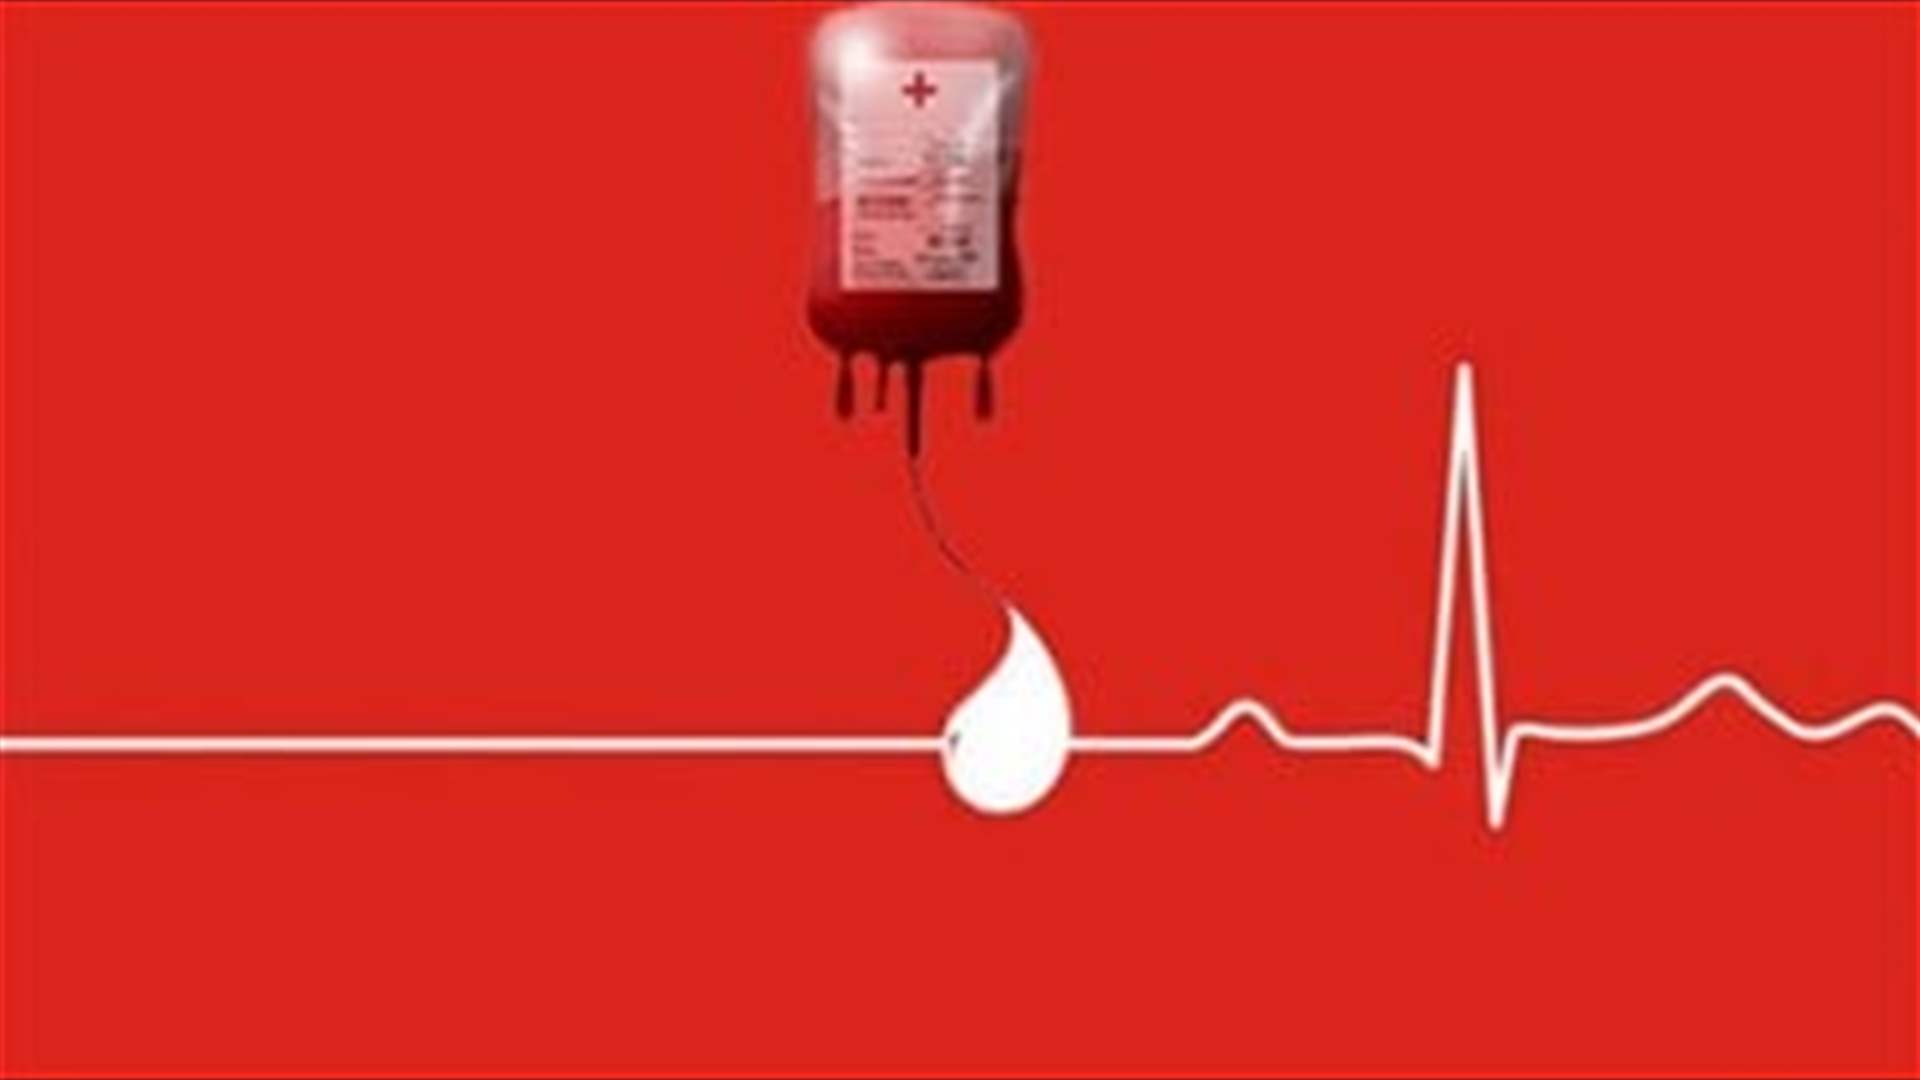 مريضة في مستشفى الجامعة الاميركية في بيروت بحاجة ماسة إلى بلاكيت دم من اي فئة... للمساعدة الرجاء الاتصال على أحد الرقمين التاليين: 03069780 أو 03769543